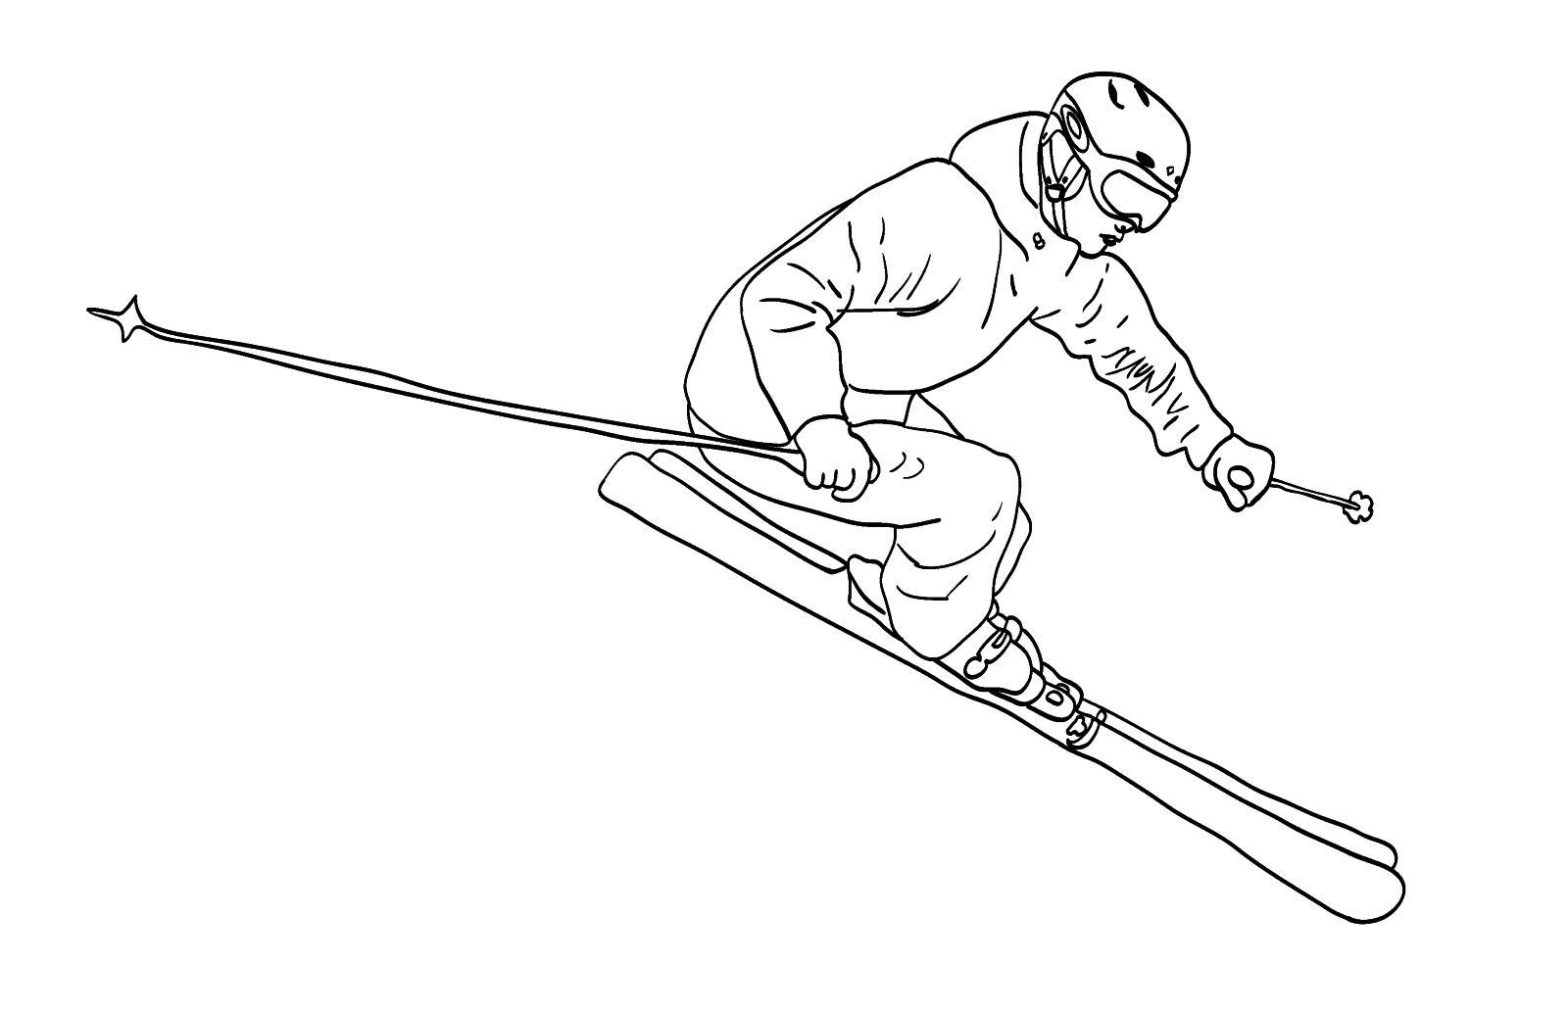 Раскраски на тему маневрирования горных лыжах для мальчиков (маневрирование)